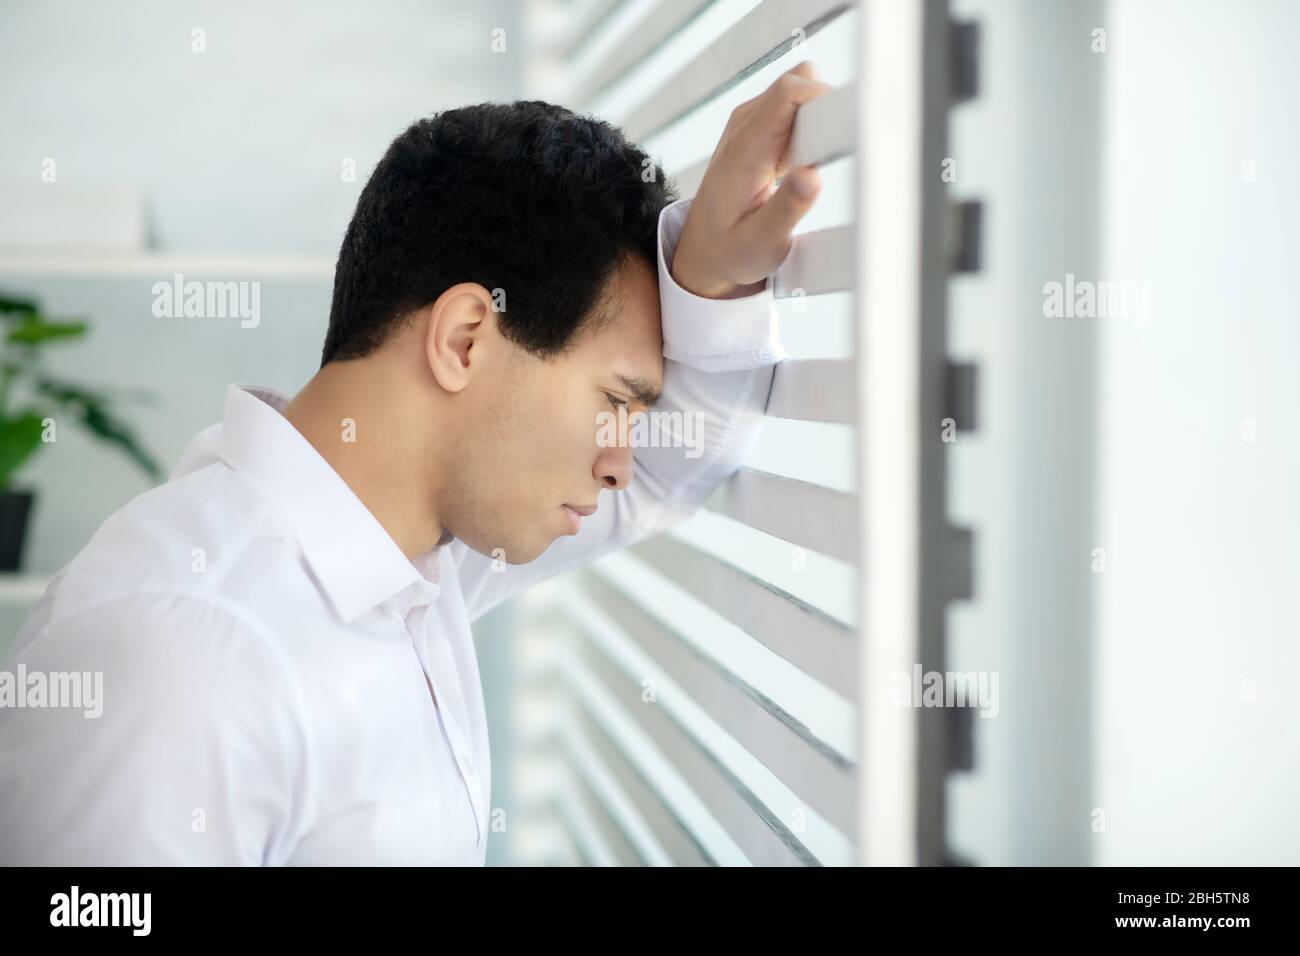 Bei der Arbeit. Verärgert jungen Brünette Mann am Fenster stehen, lehnt seinen Arm und Kopf auf Jalousien Stockfoto